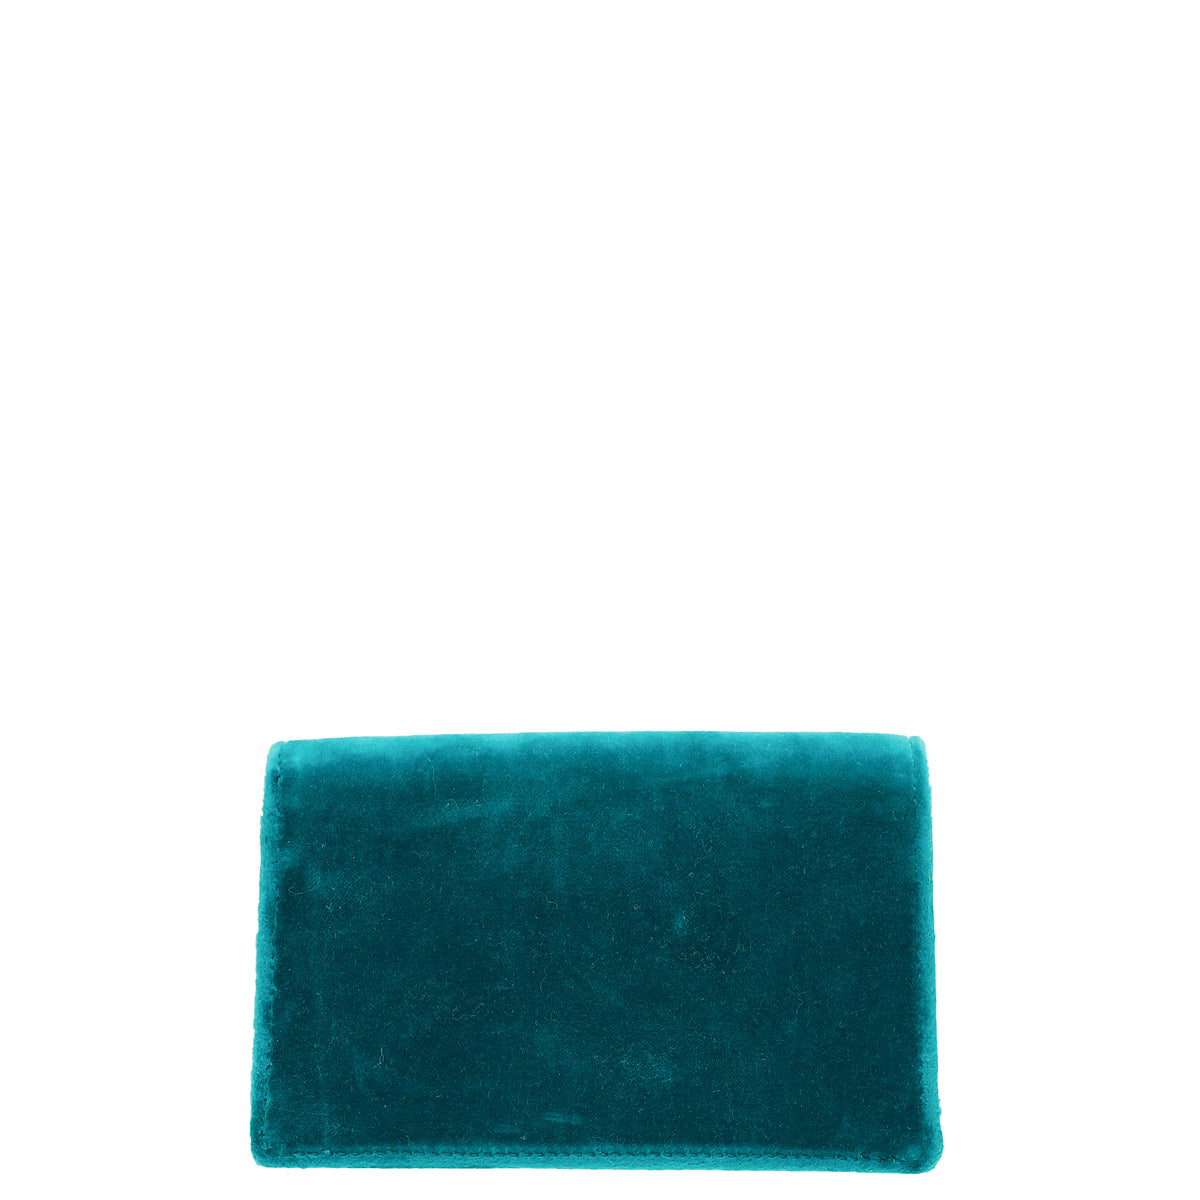 Gucci Turquoise Velvet Dionysus Super Mini Bag